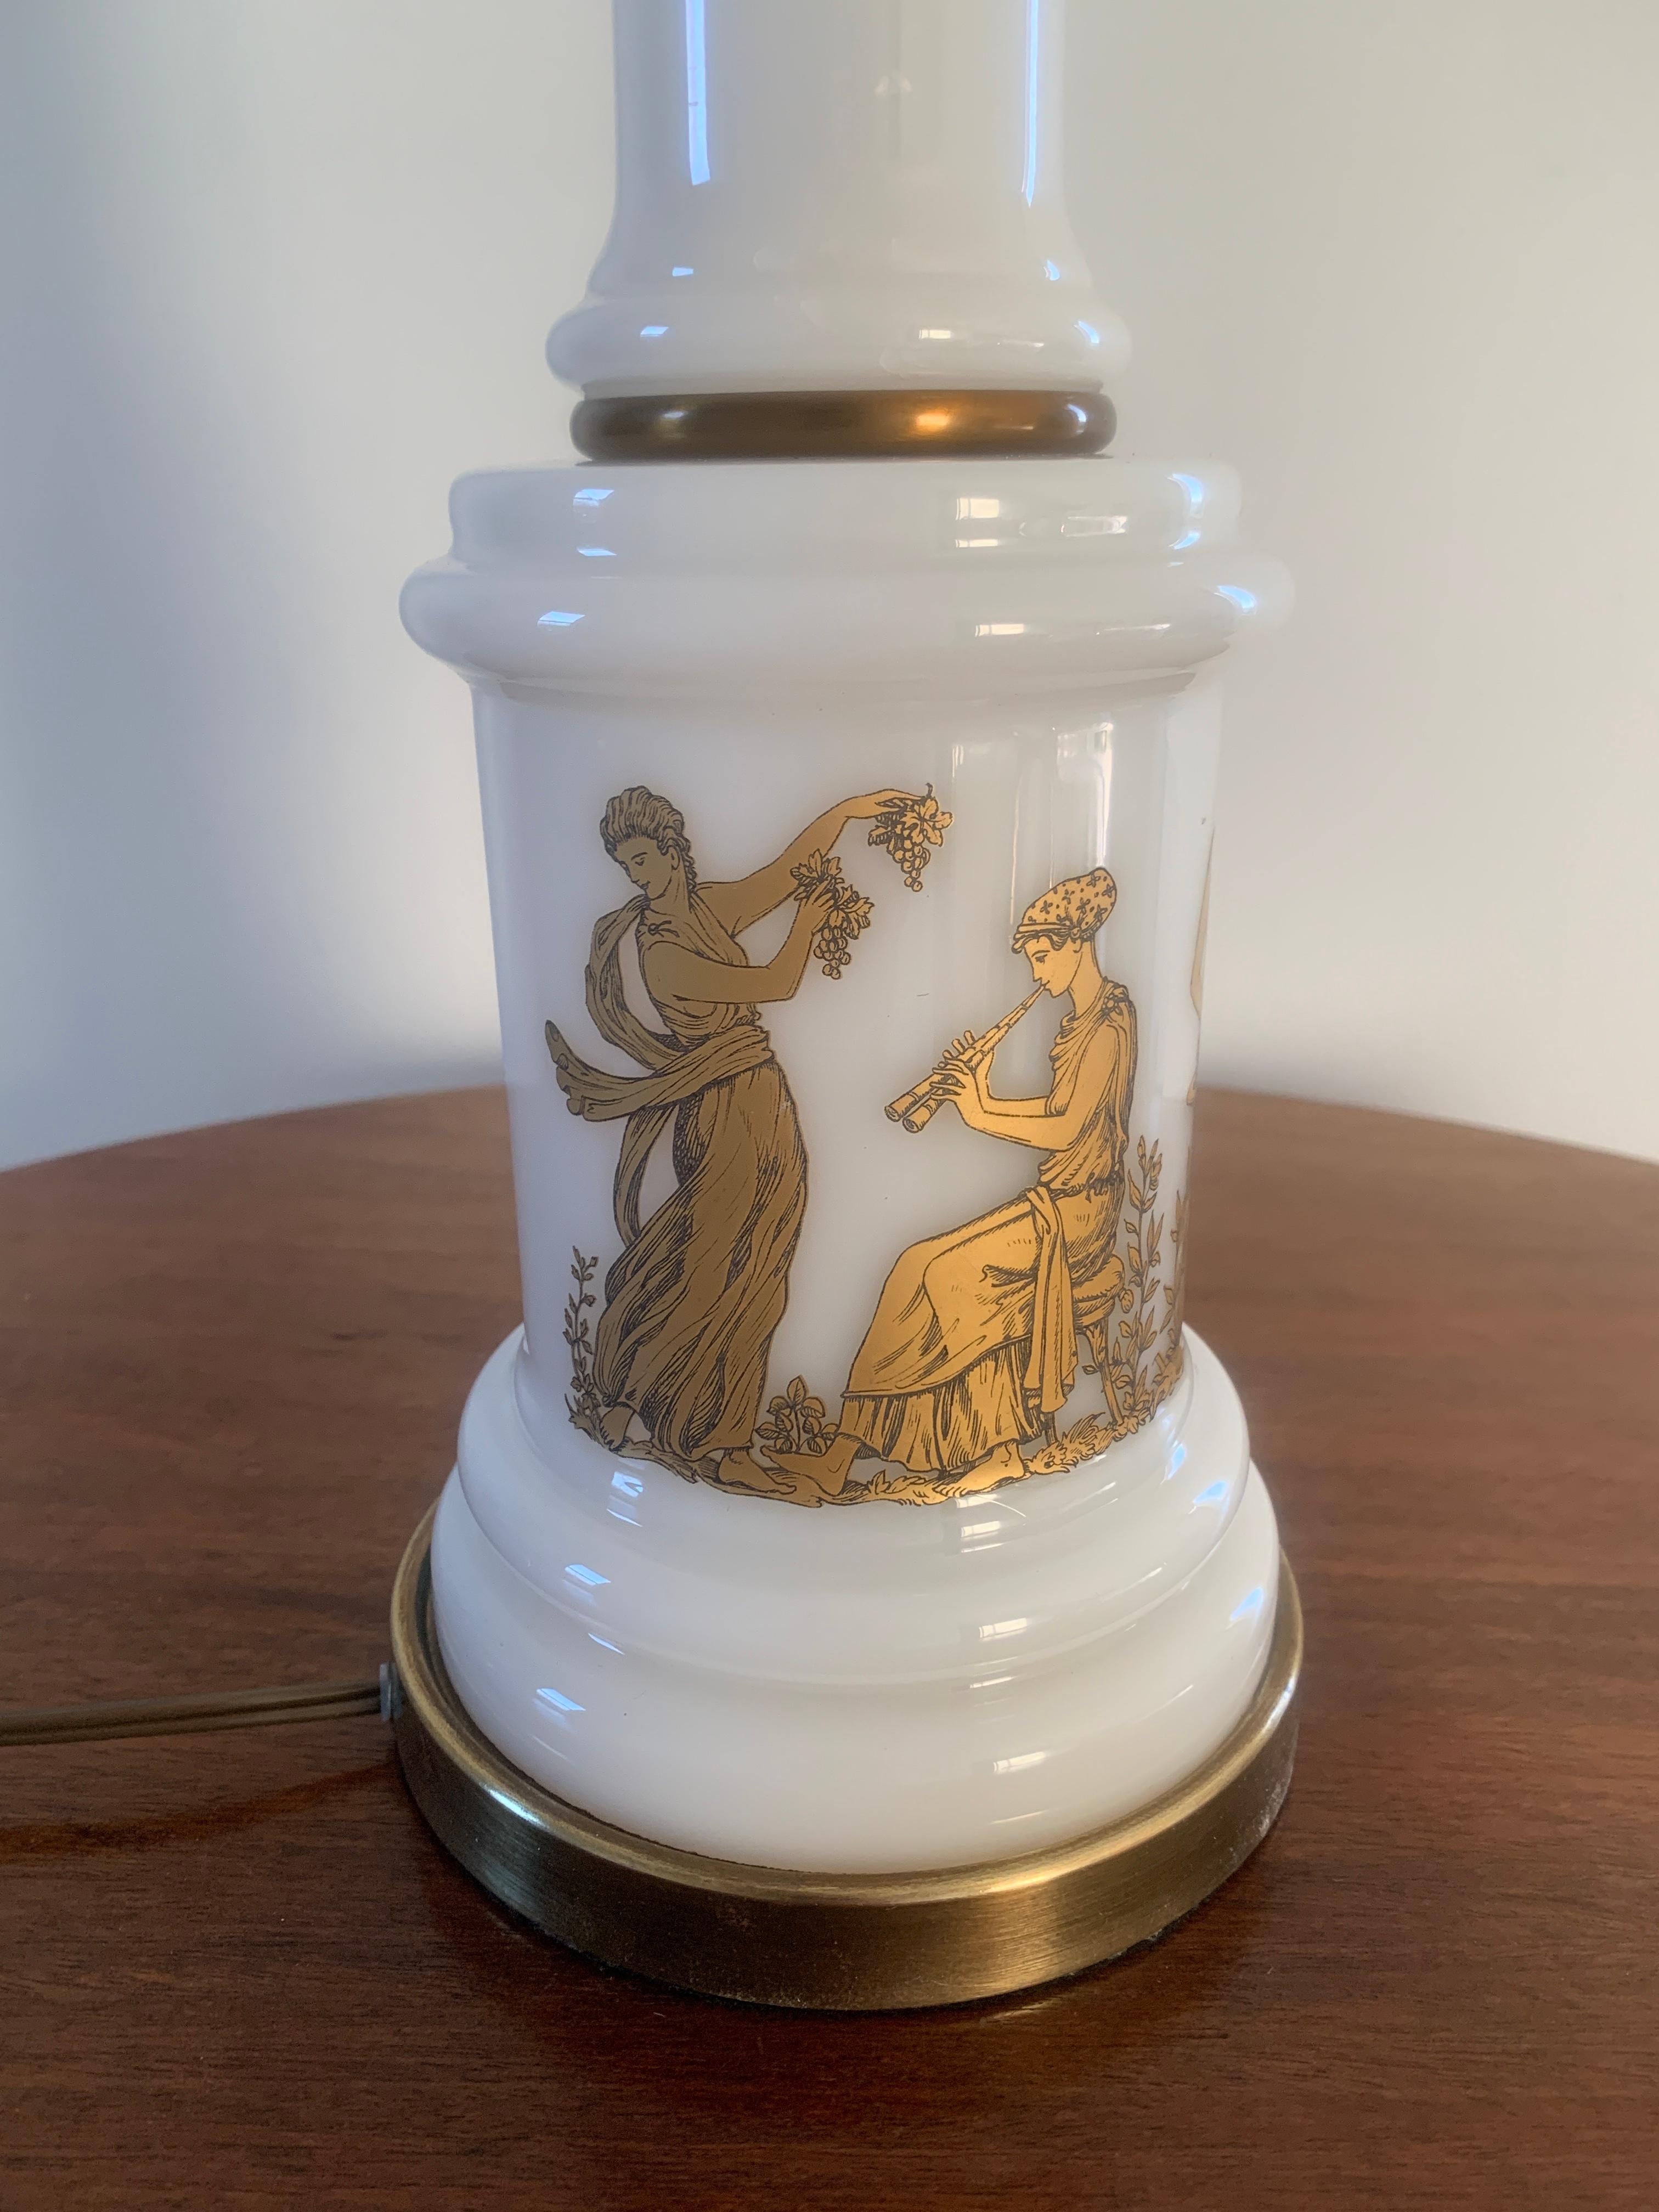 Superbe lampe de table en opaline de style néoclassique représentant des figures grecques dansant.

USA, Circa 1960s

Mesures : 5,75 